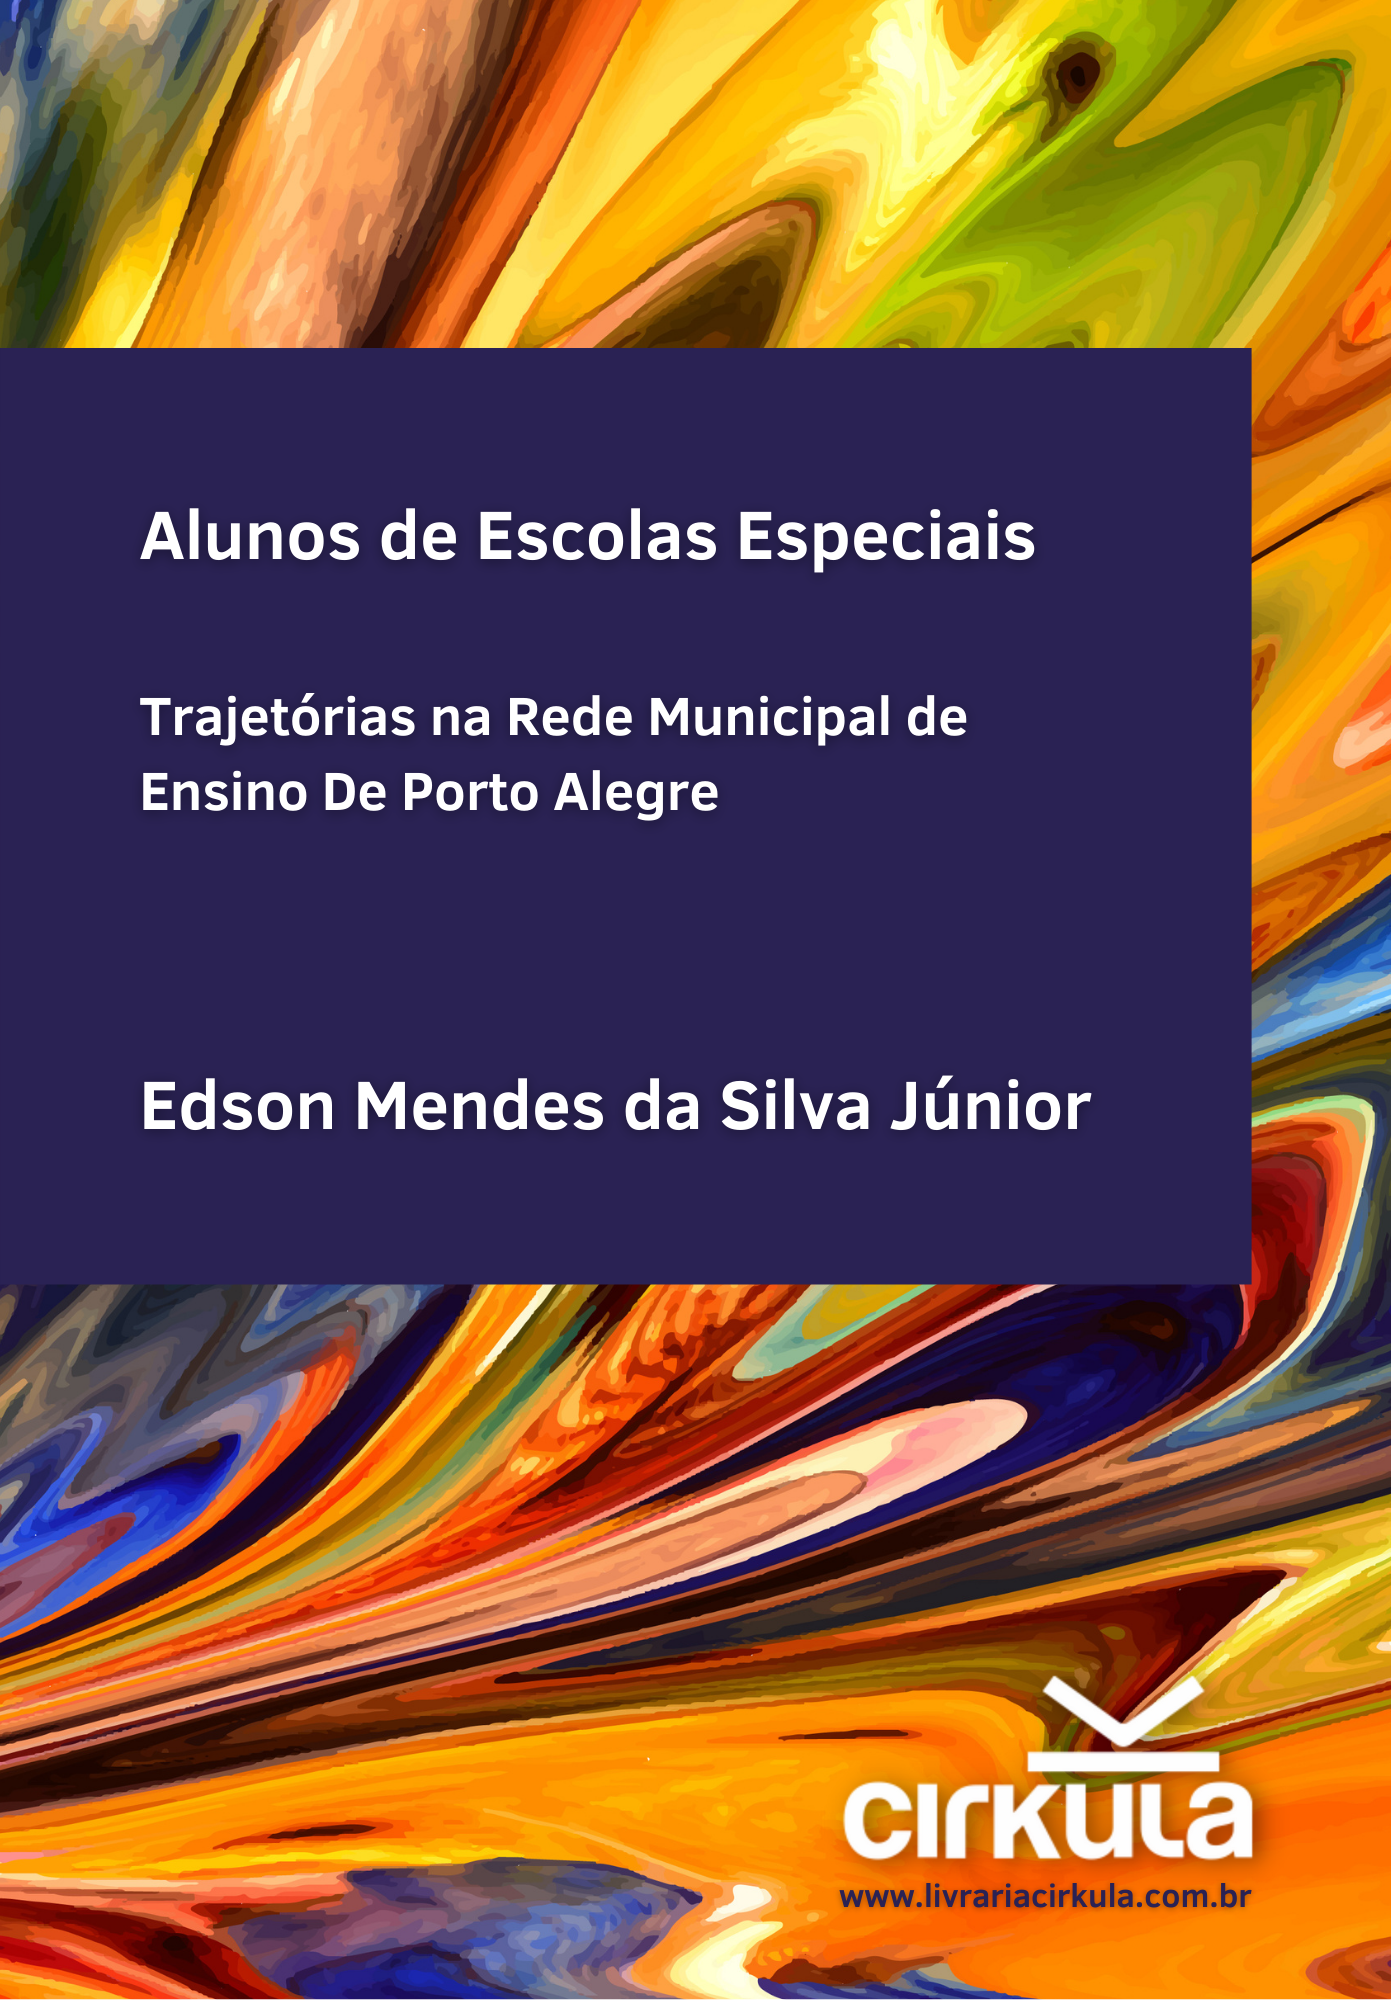 Alunos de Escolas Especiais: trajetórias na Rede Municipal de Ensino de Porto Alegre